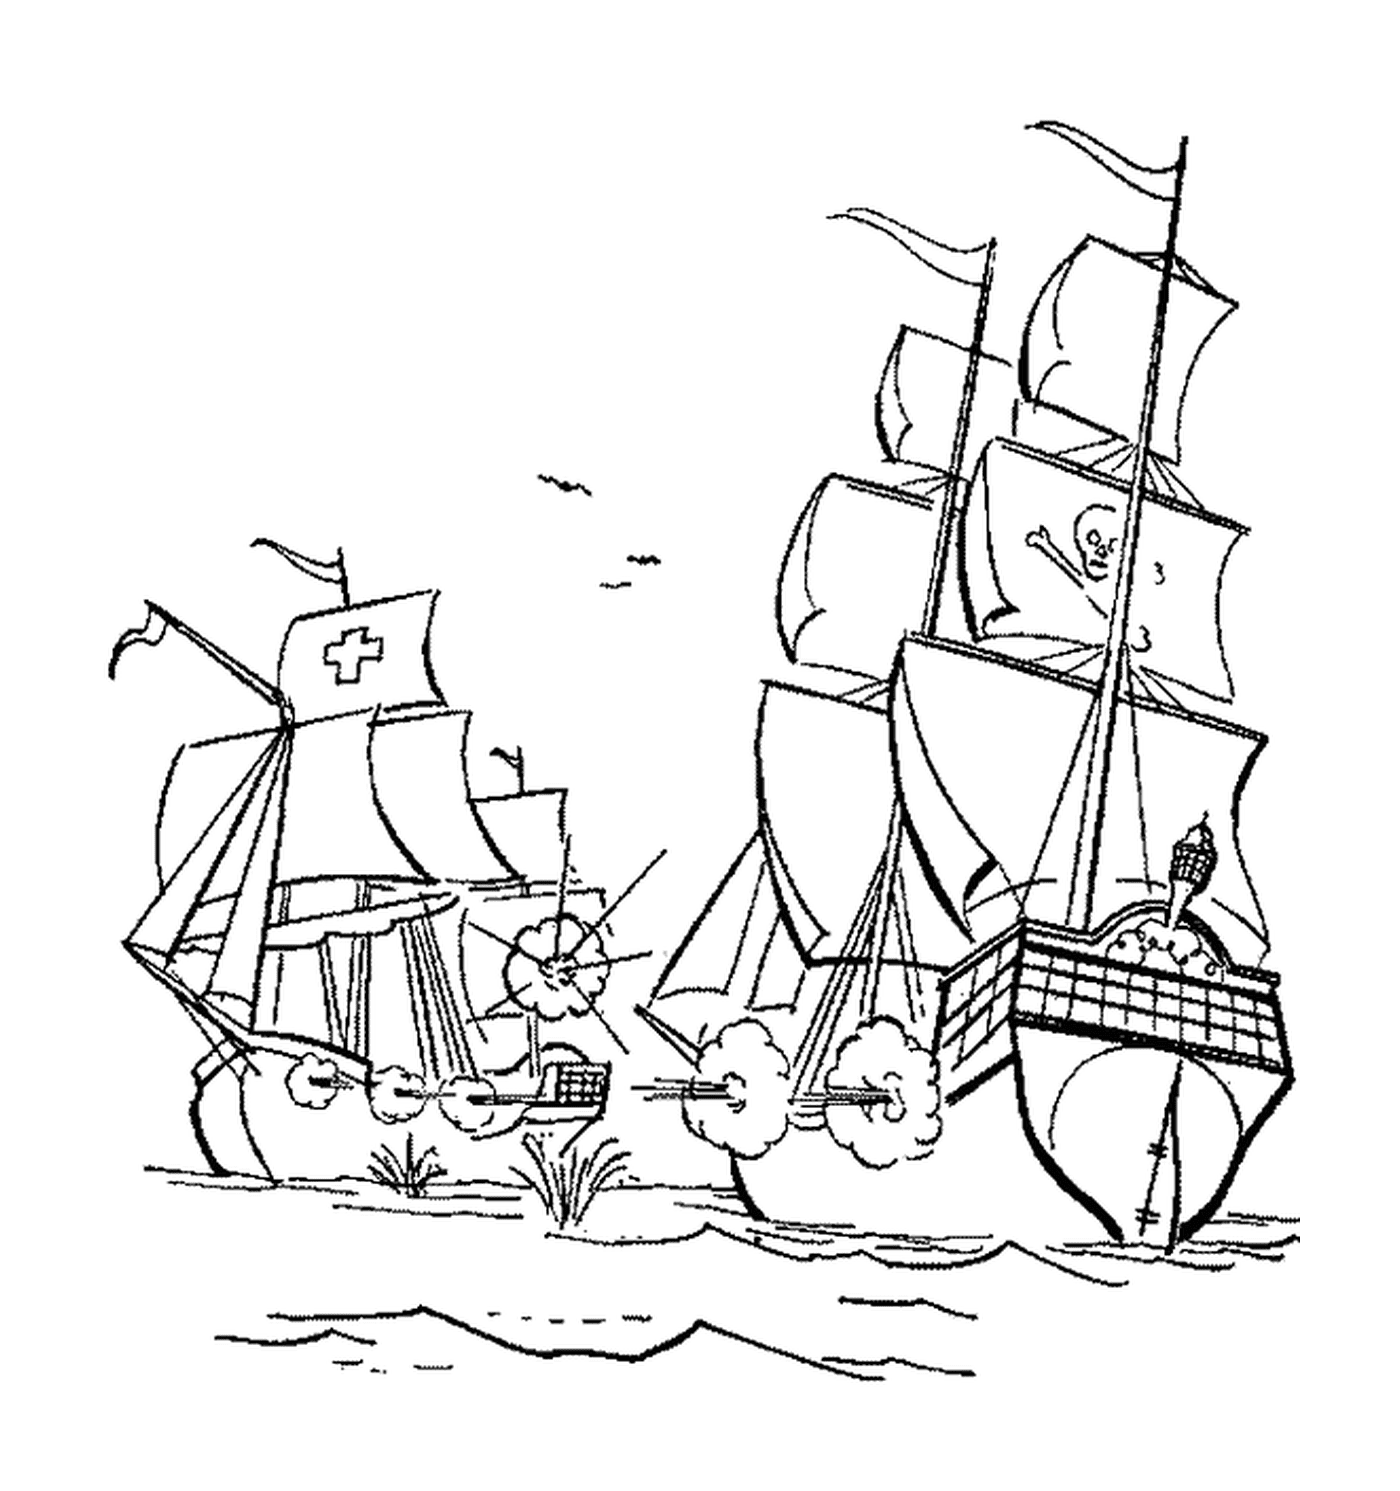  Das Piratenschiff greift ein Frachtschiff an 